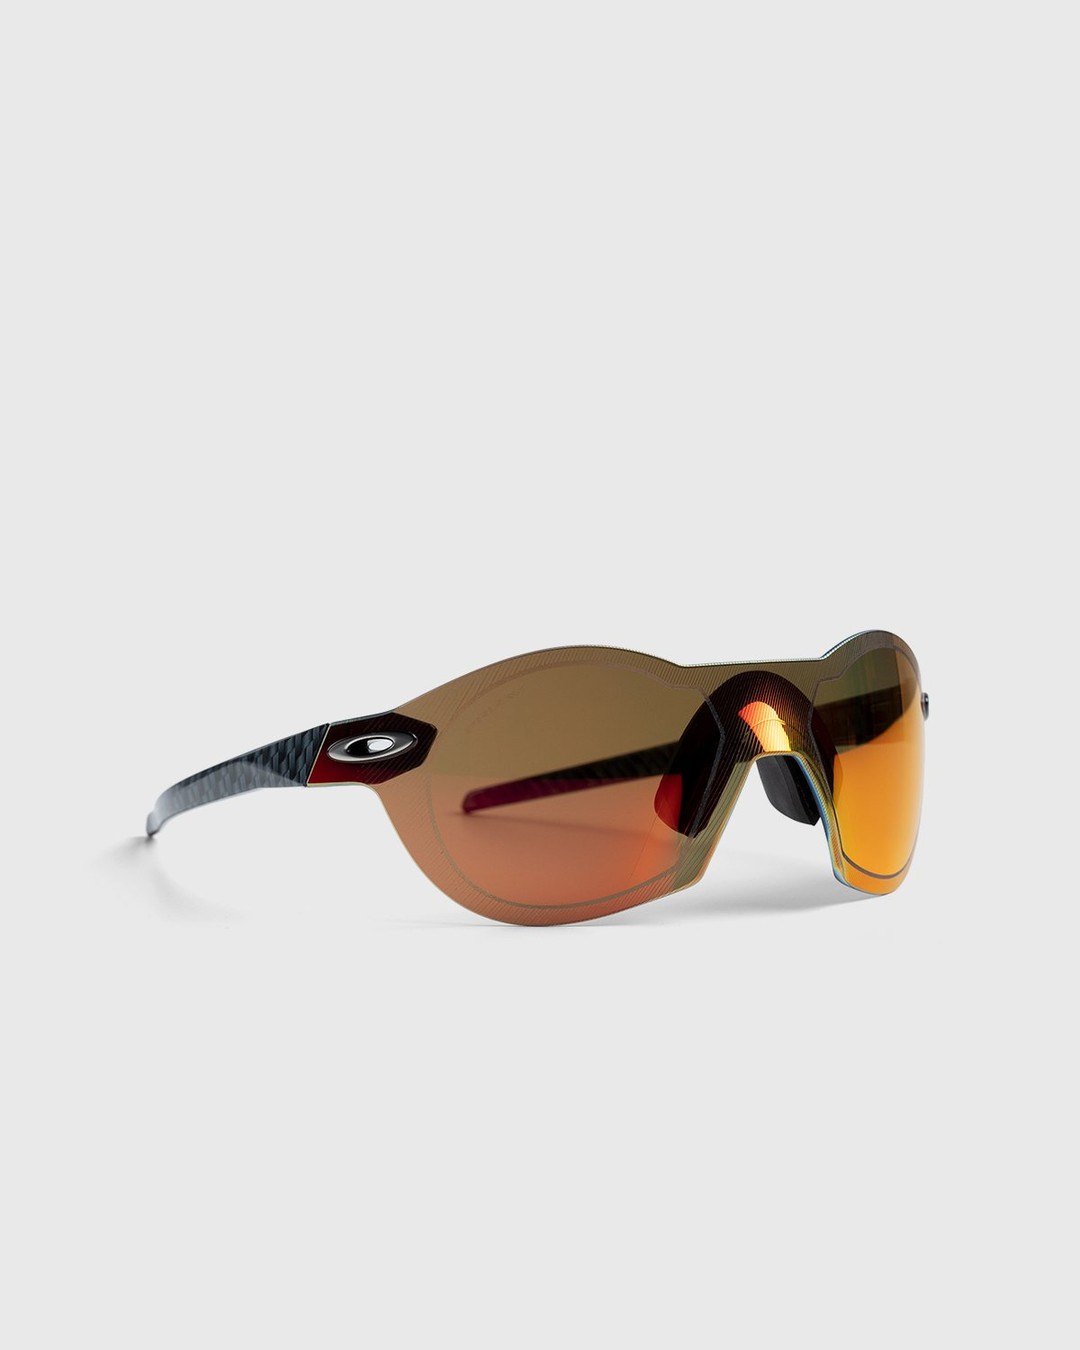 Oakley – Re:SubZero Carbon Fiber Prizm Ruby - Sunglasses - Red - Image 3